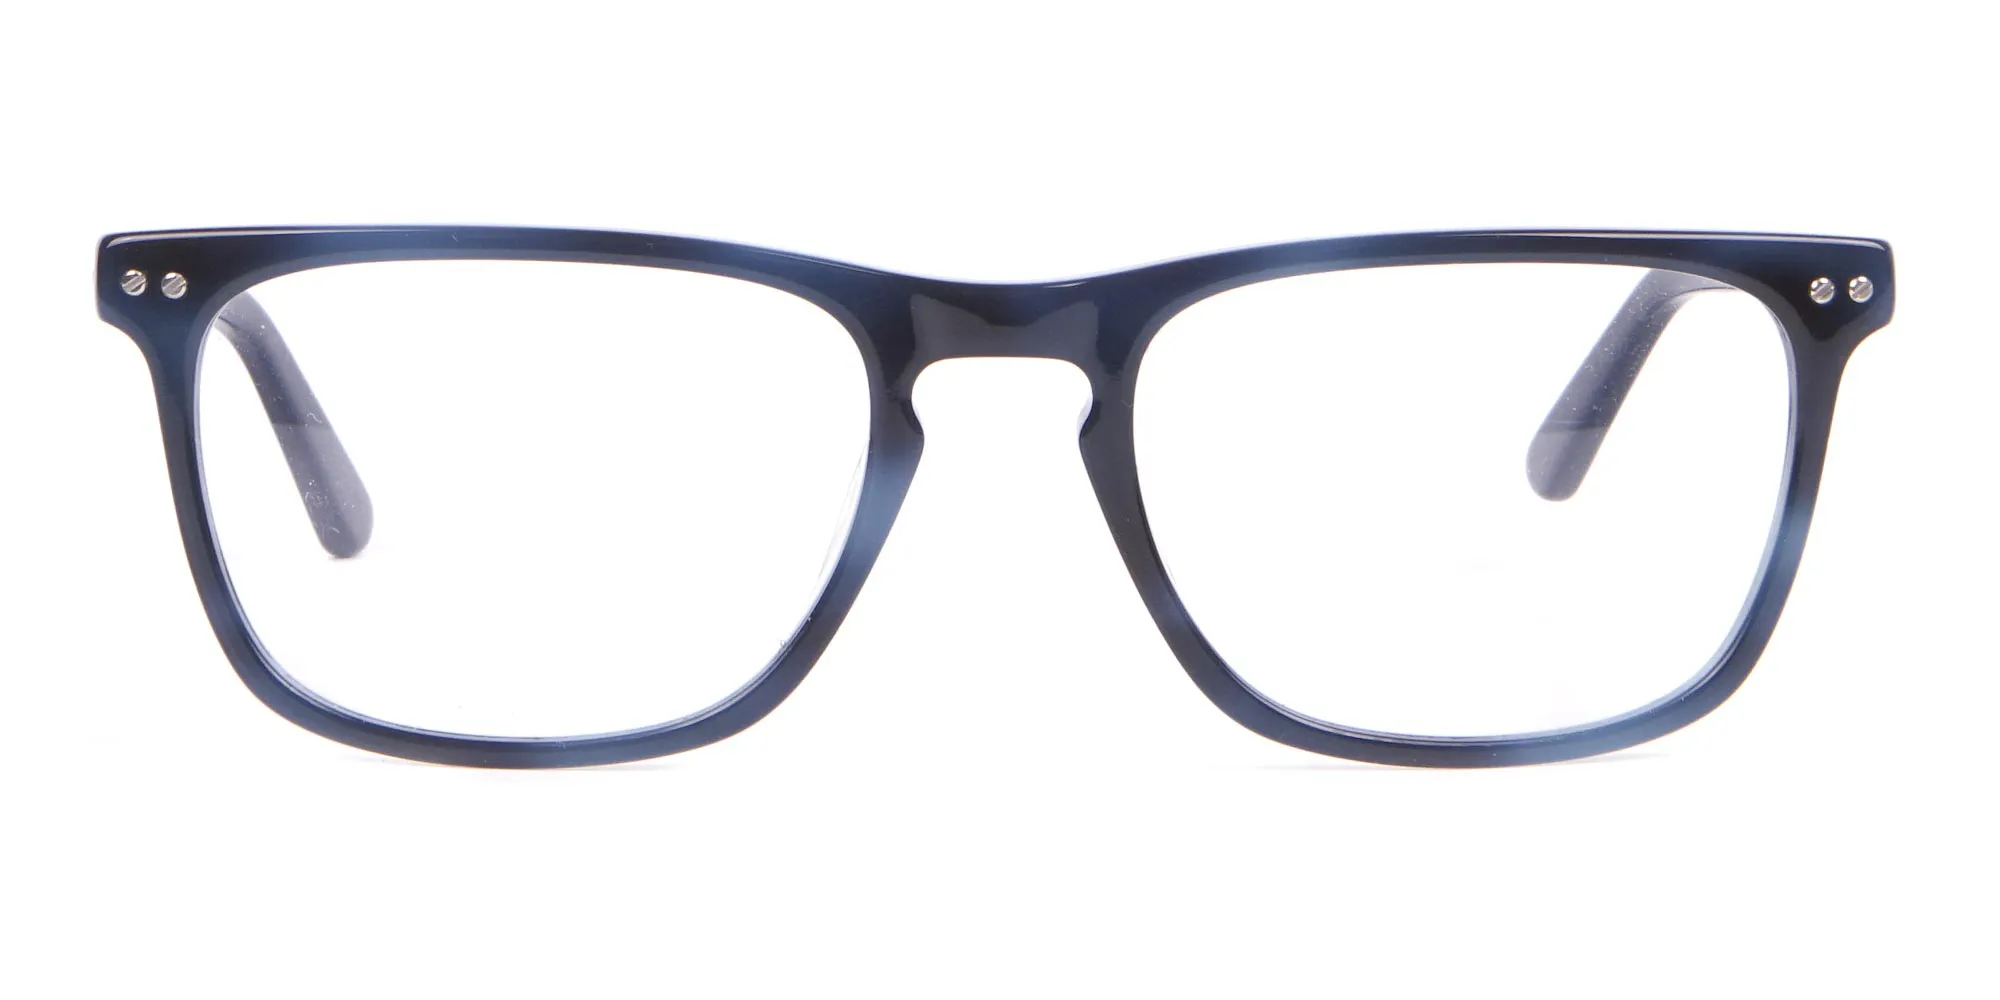 Calvin Klein CK18513 Rectangular Glasses in Tortoiseshell -2